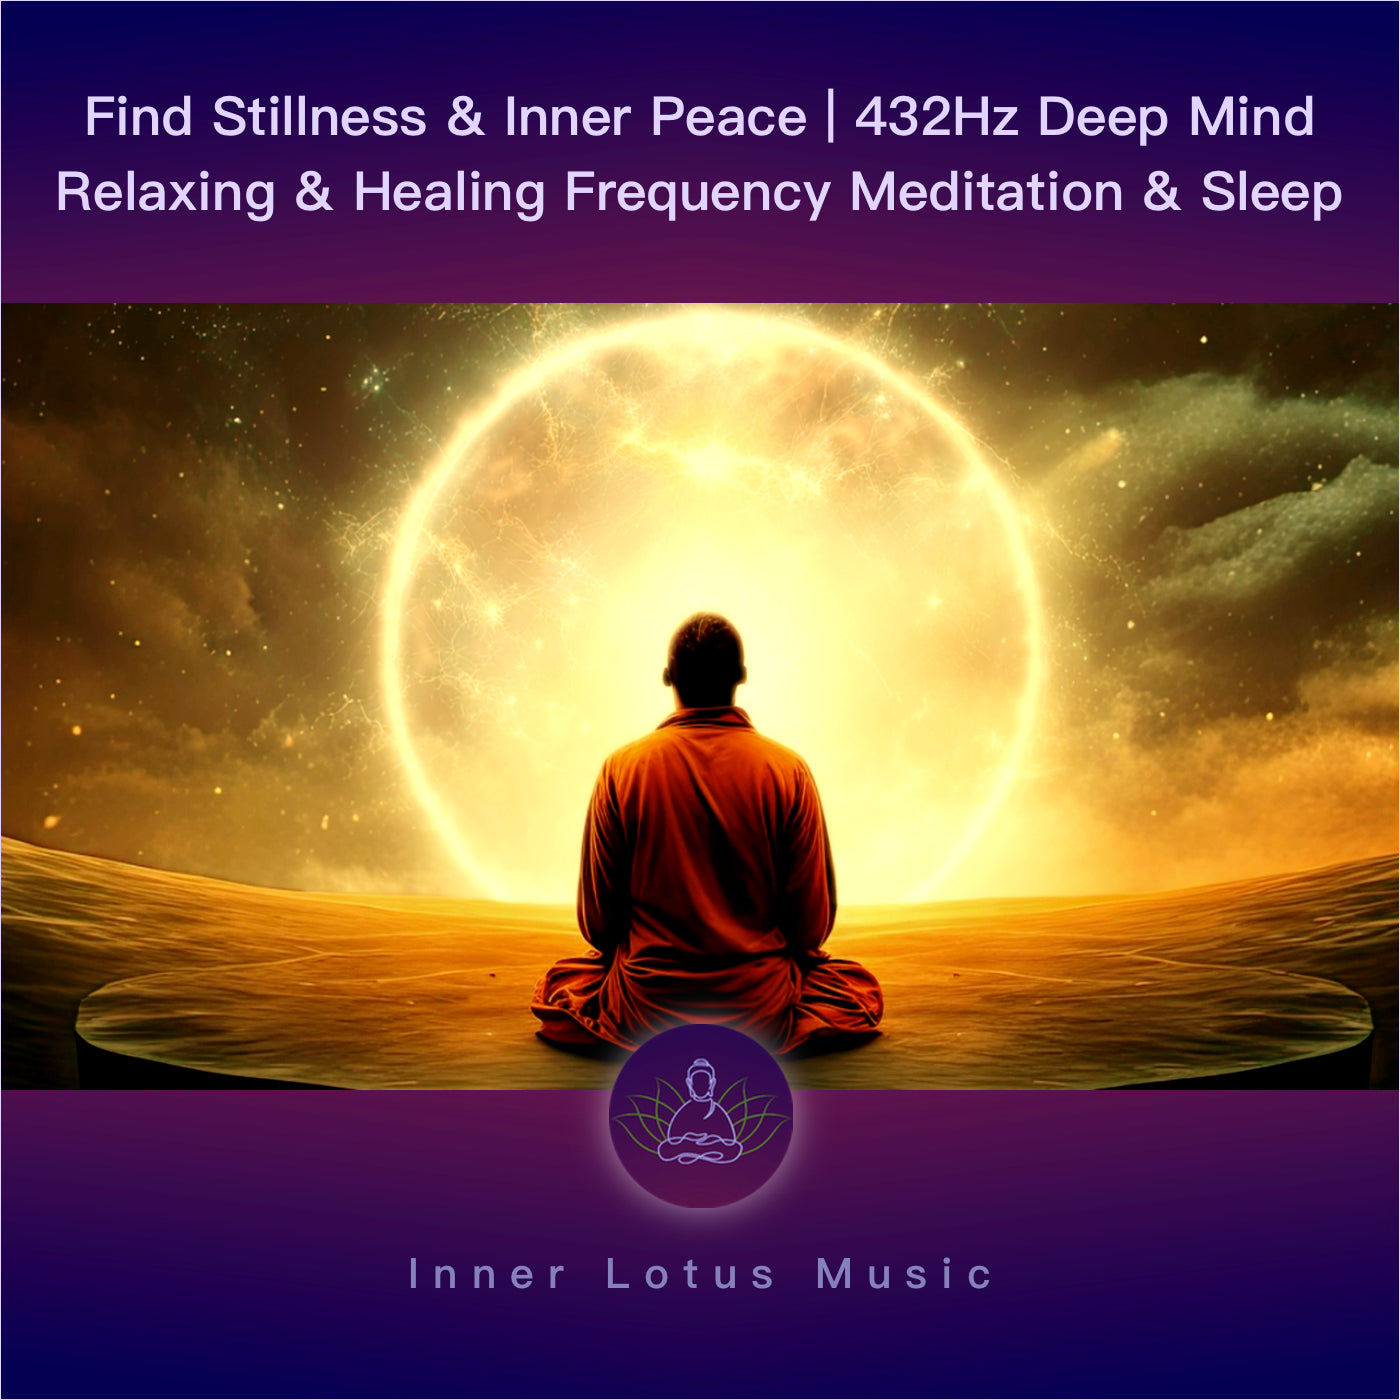 Encuentra Quietud y Paz Interior | Música Curativa 432Hz Frecuencia Relajación, Meditación y Sueño